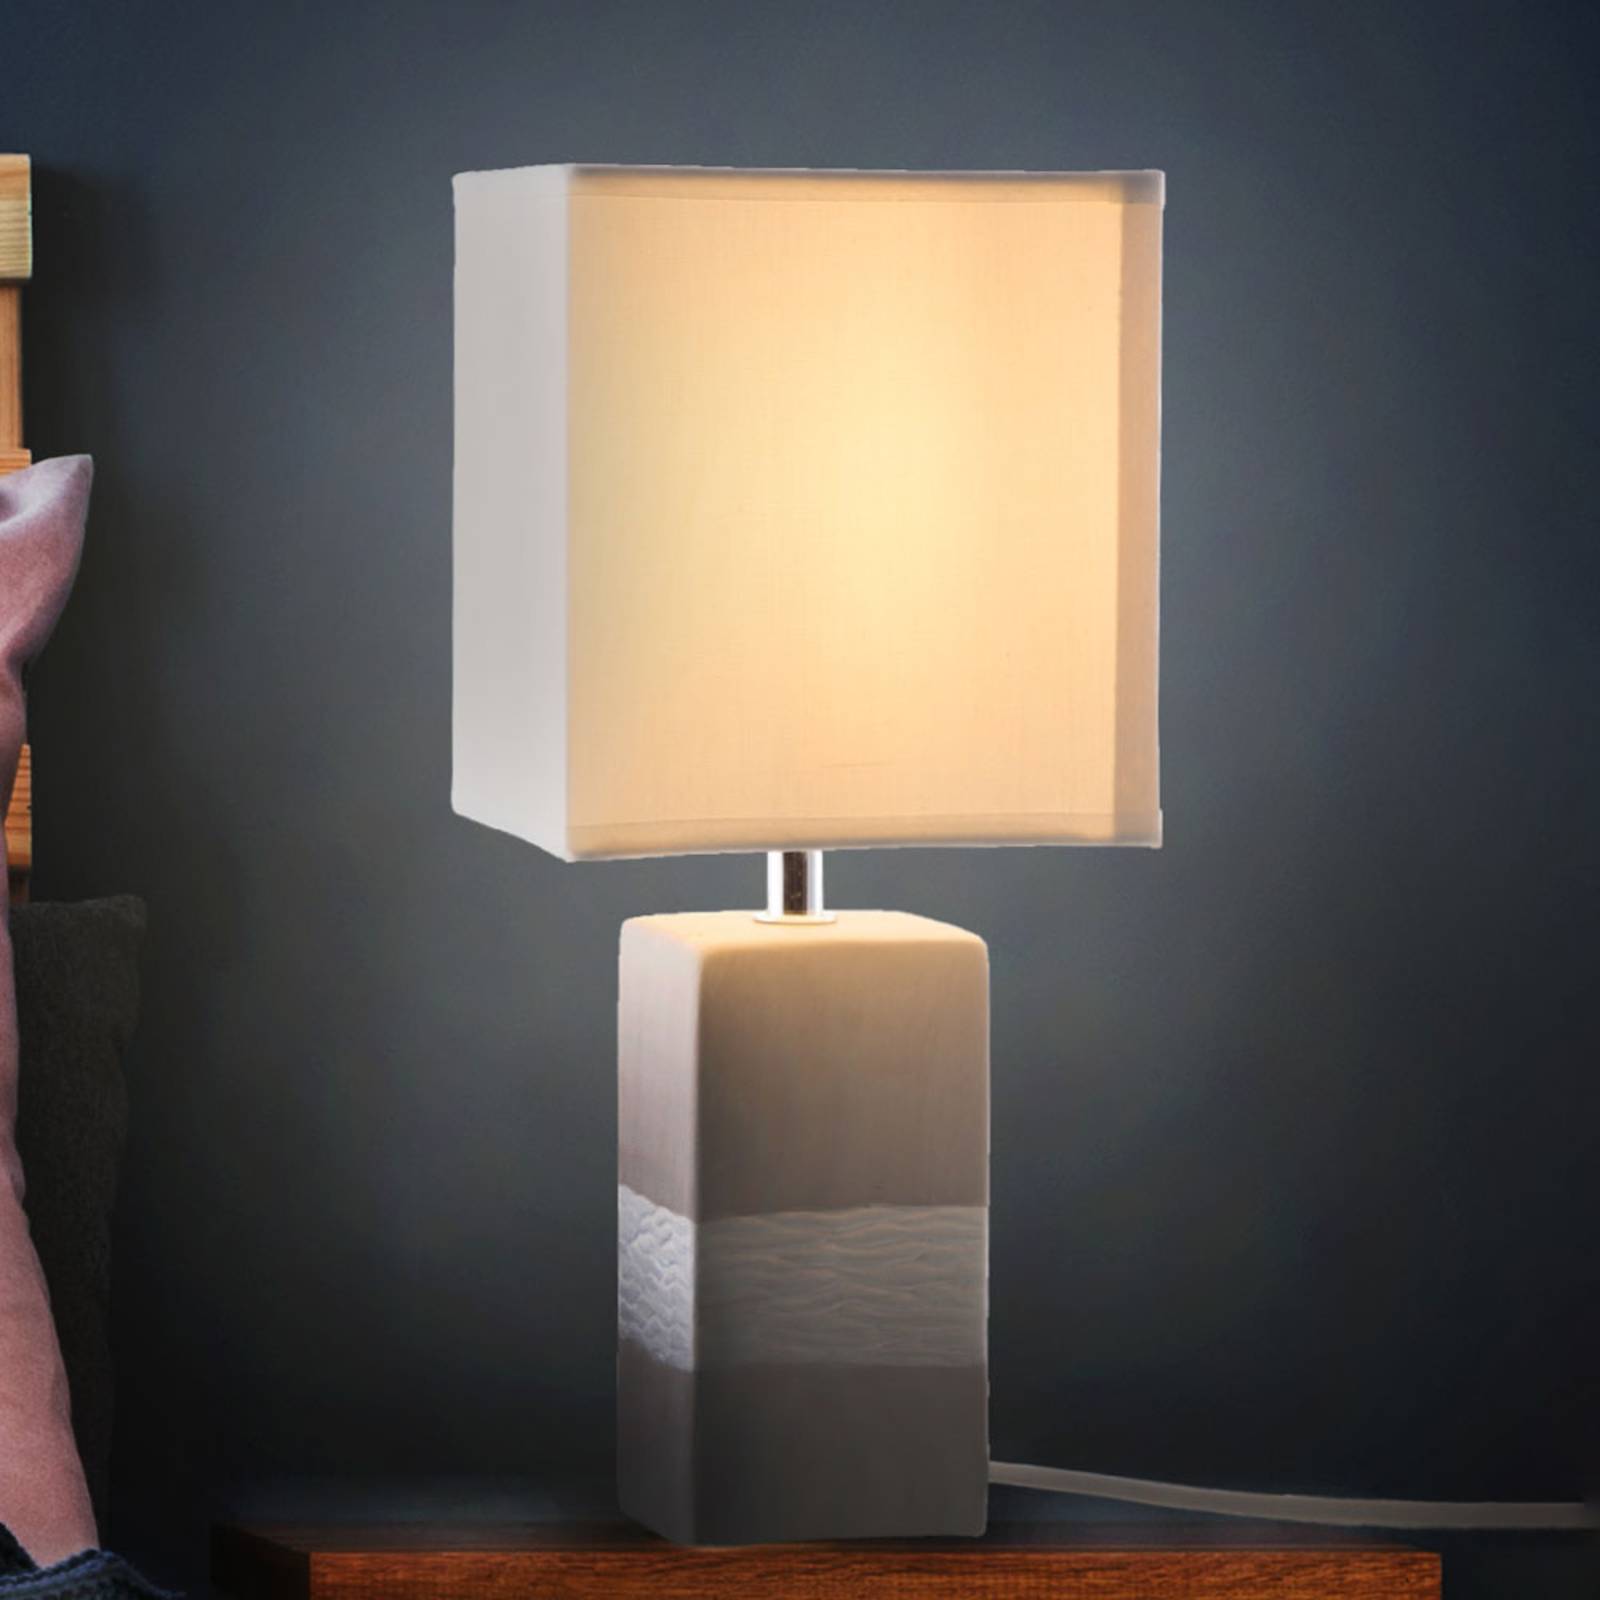 Bordslampa Creto med kantig skärm och fot